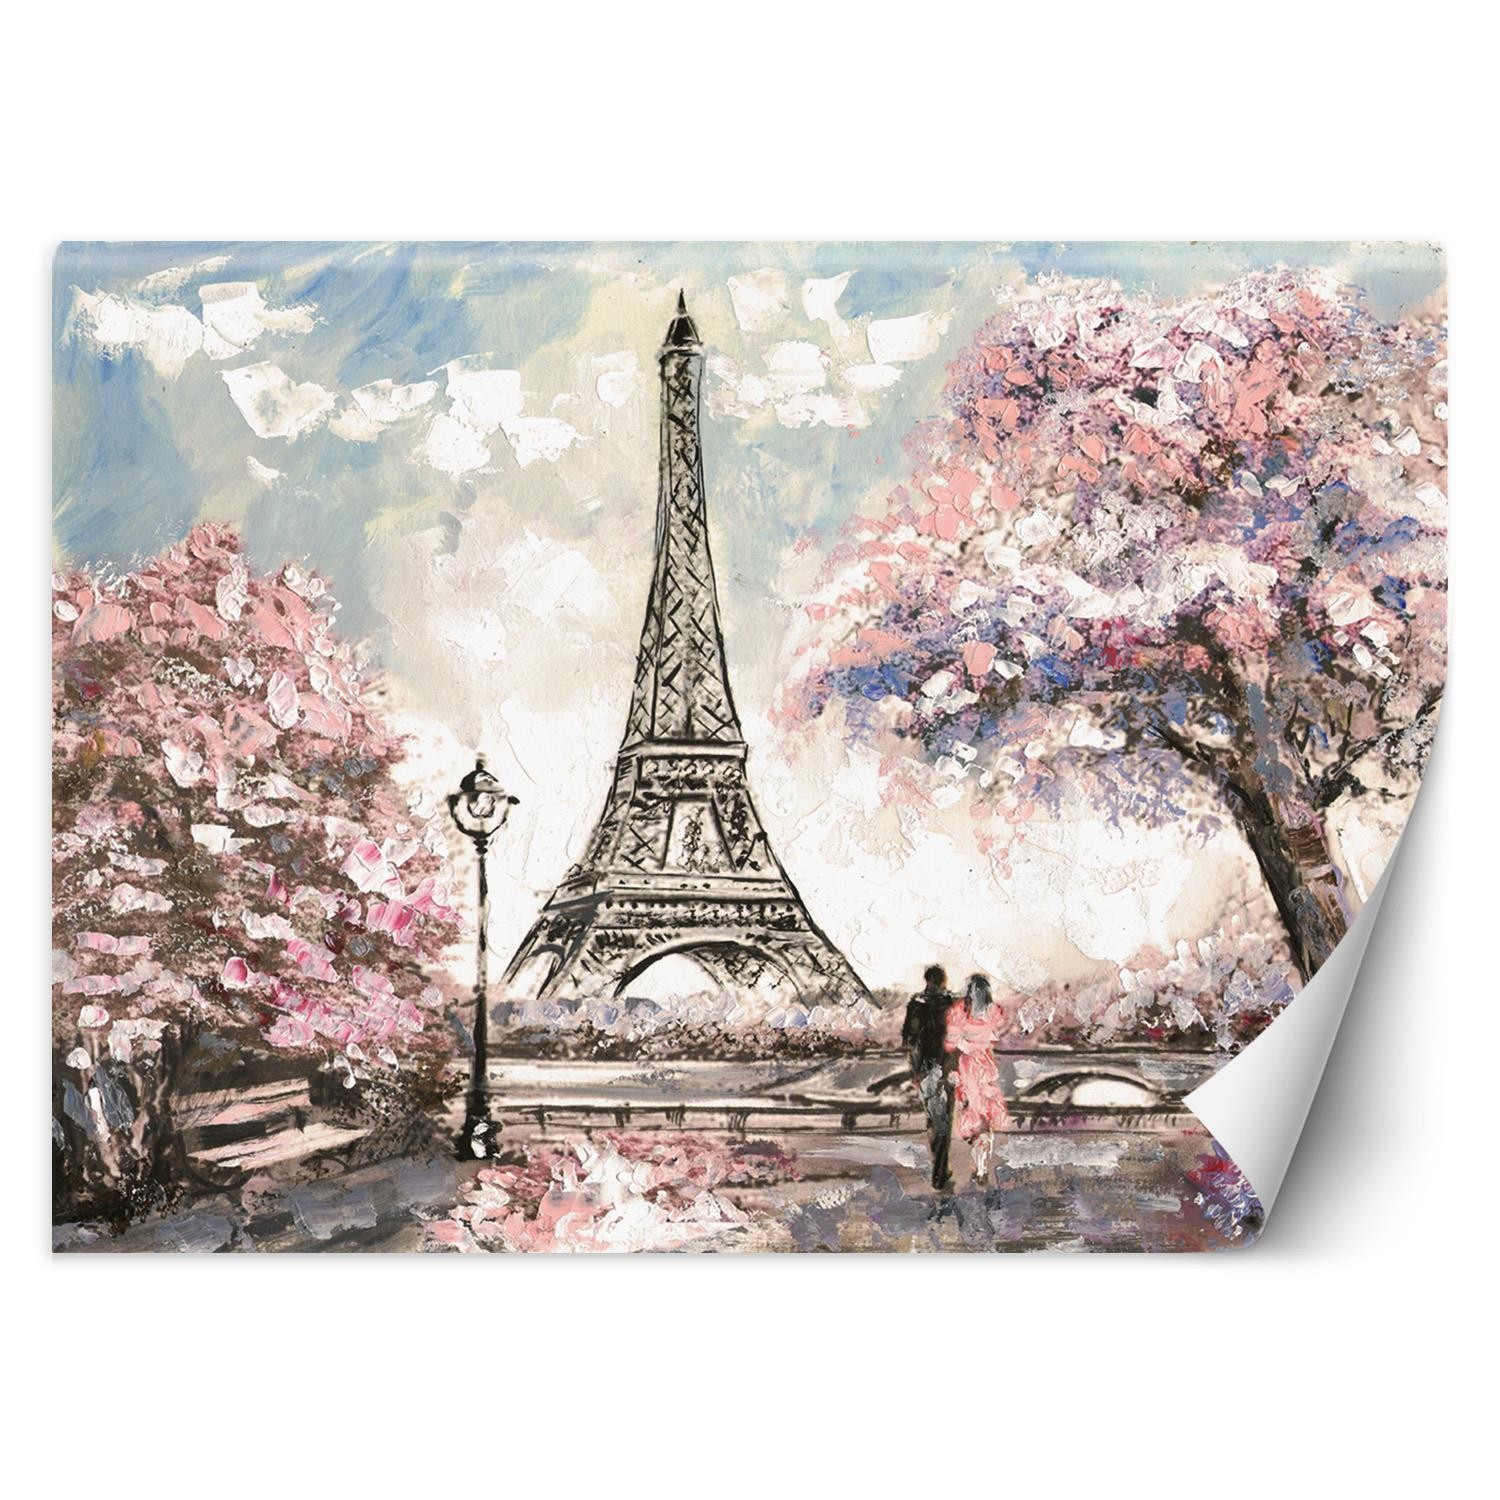 Trend24 – Behang – Parijs – Vliesbehang – Fotobehang – Behang Woonkamer – 450x315x2 cm – Incl. behanglijm